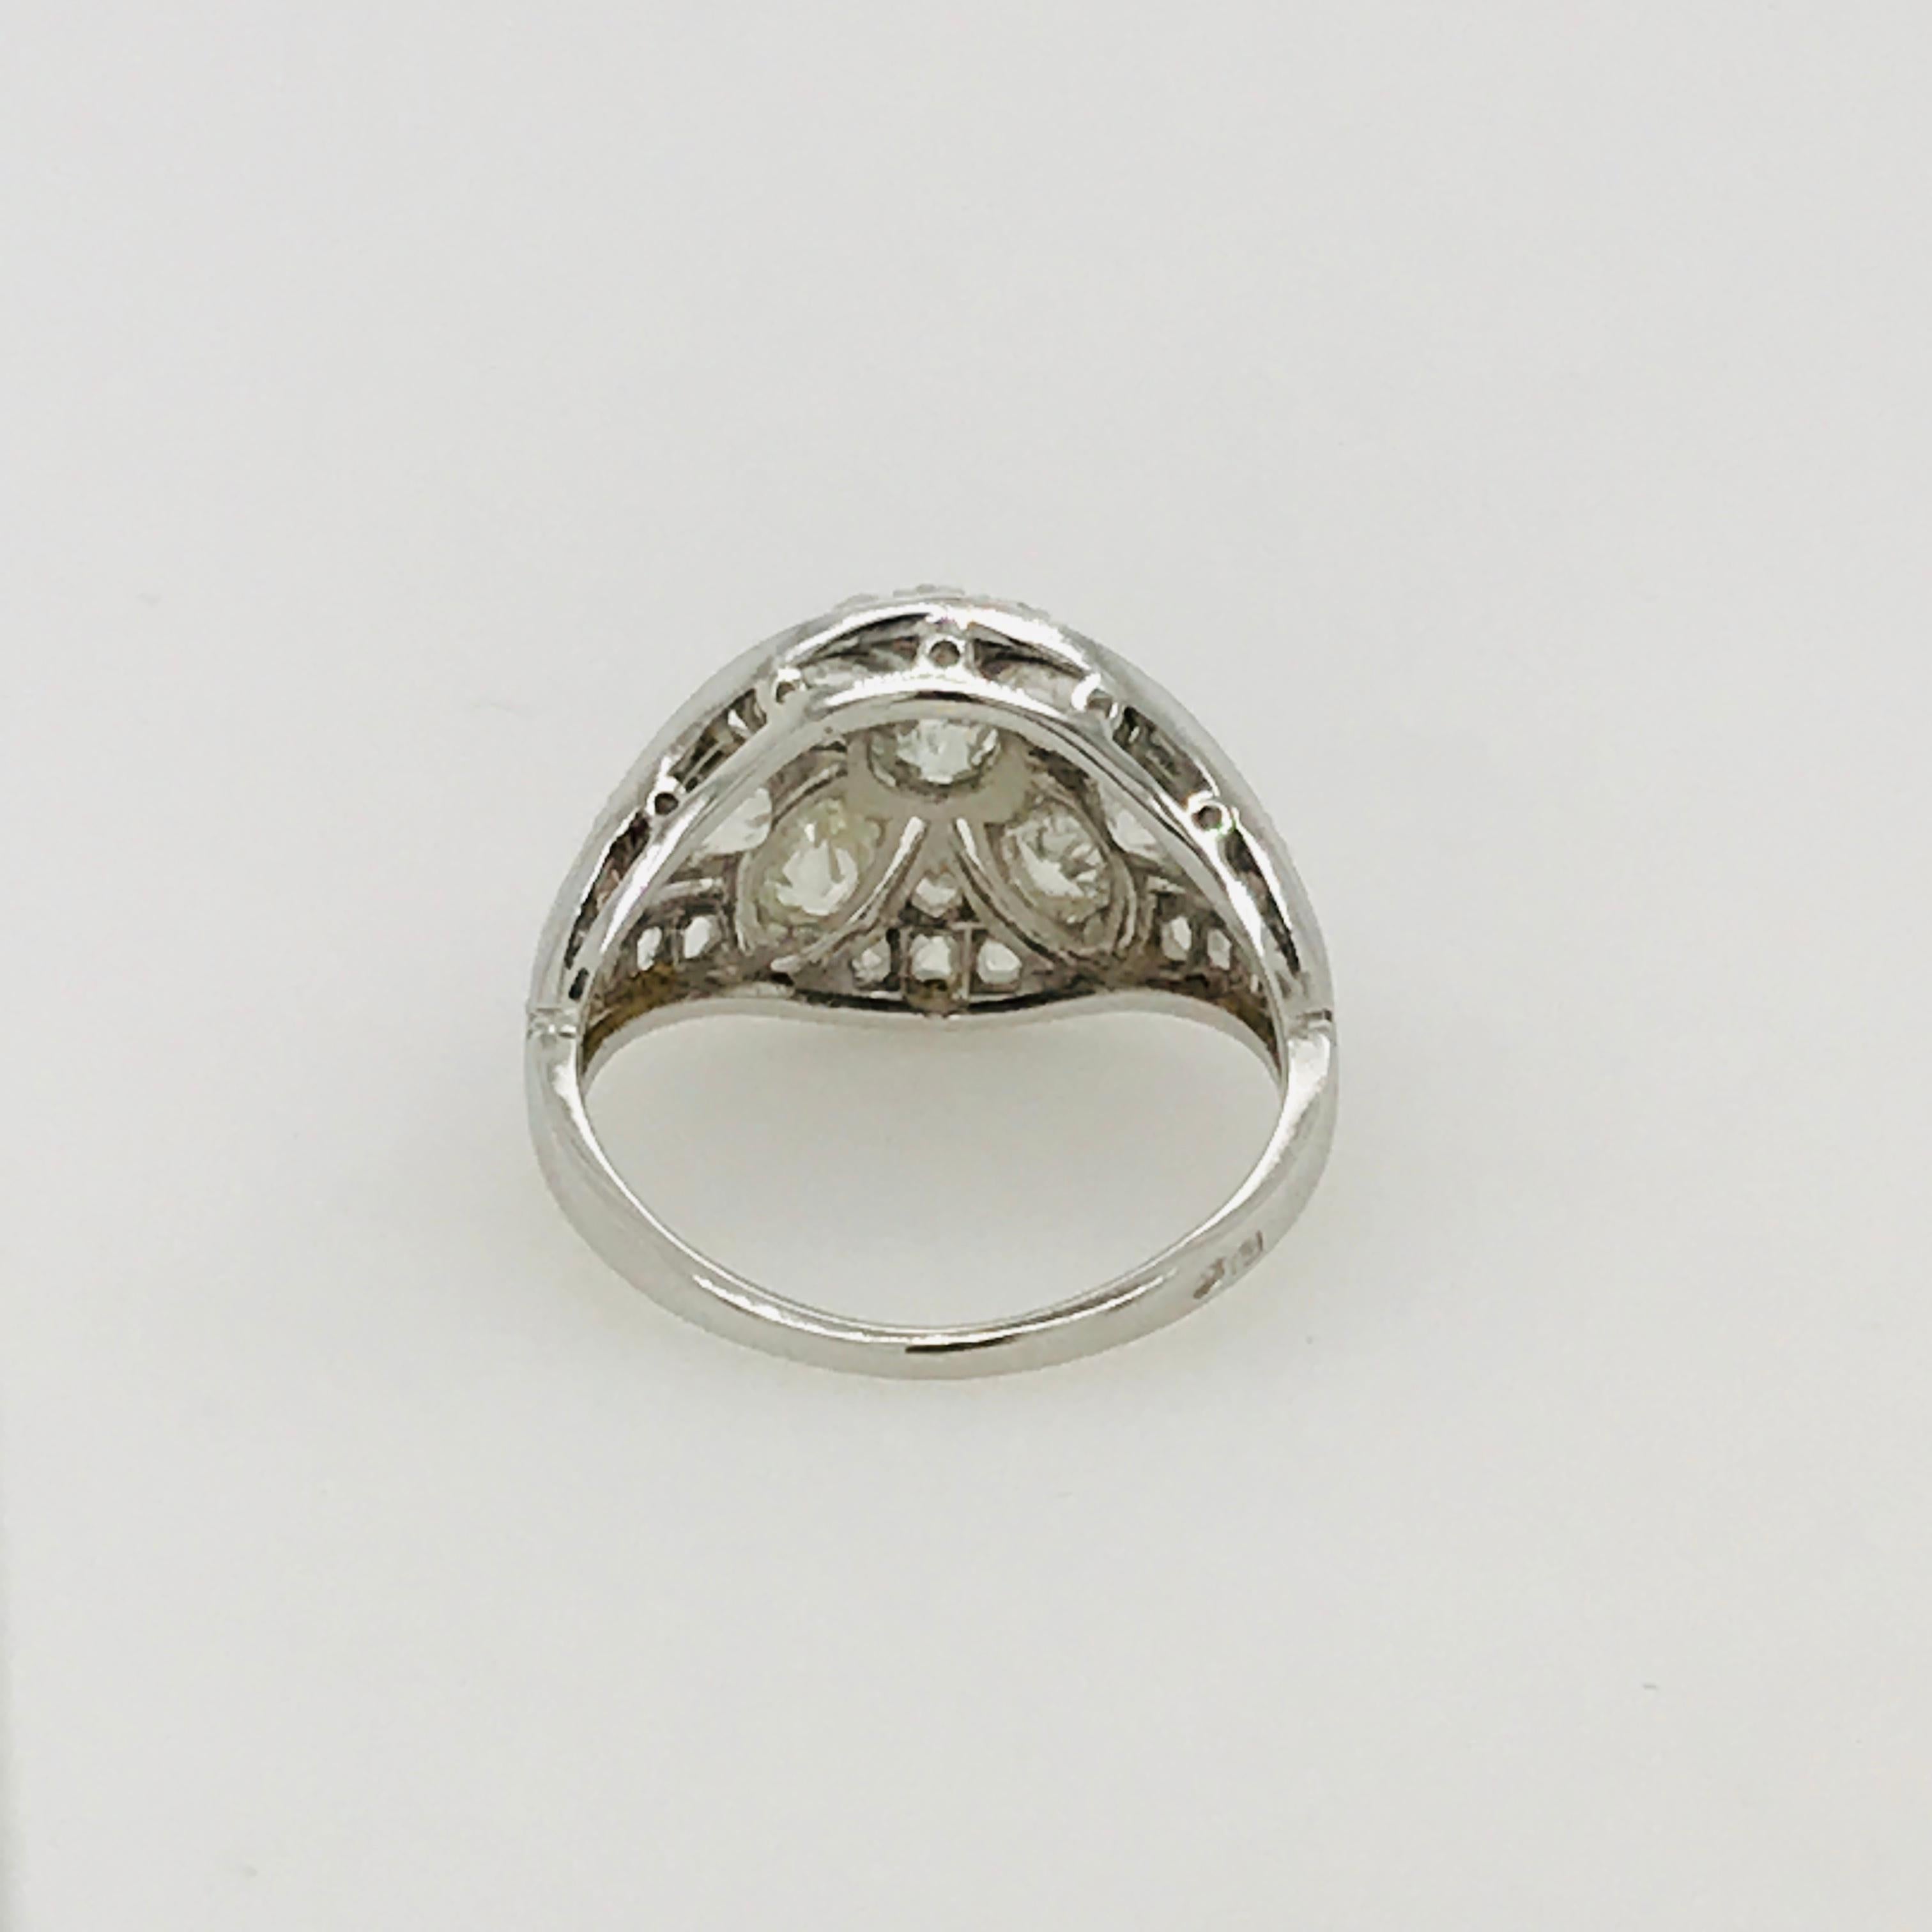 Art Deco Period Diamond Ring circa 1930 Set in Platinum and 18 Carat White Gold (Alteuropäischer Brillantschliff)